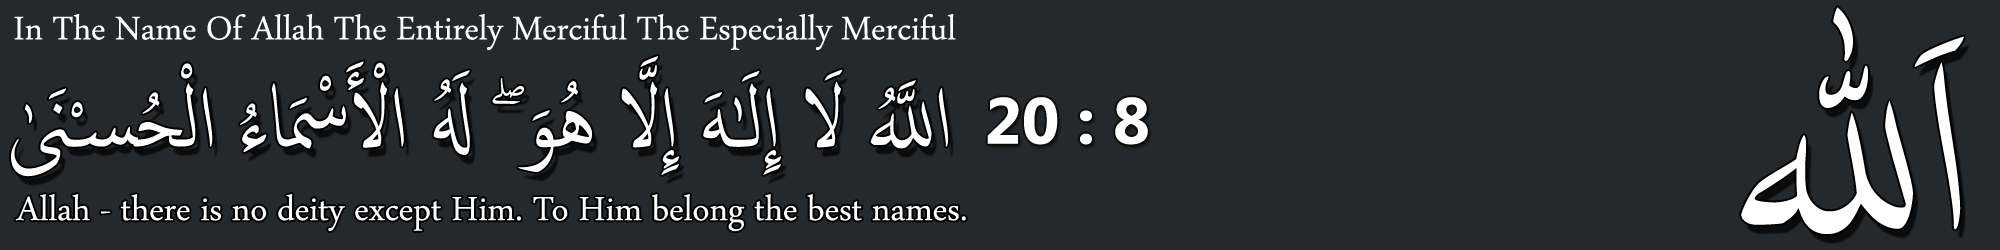 The Best Name Of Allah - Surat Ta-ha Verse 8